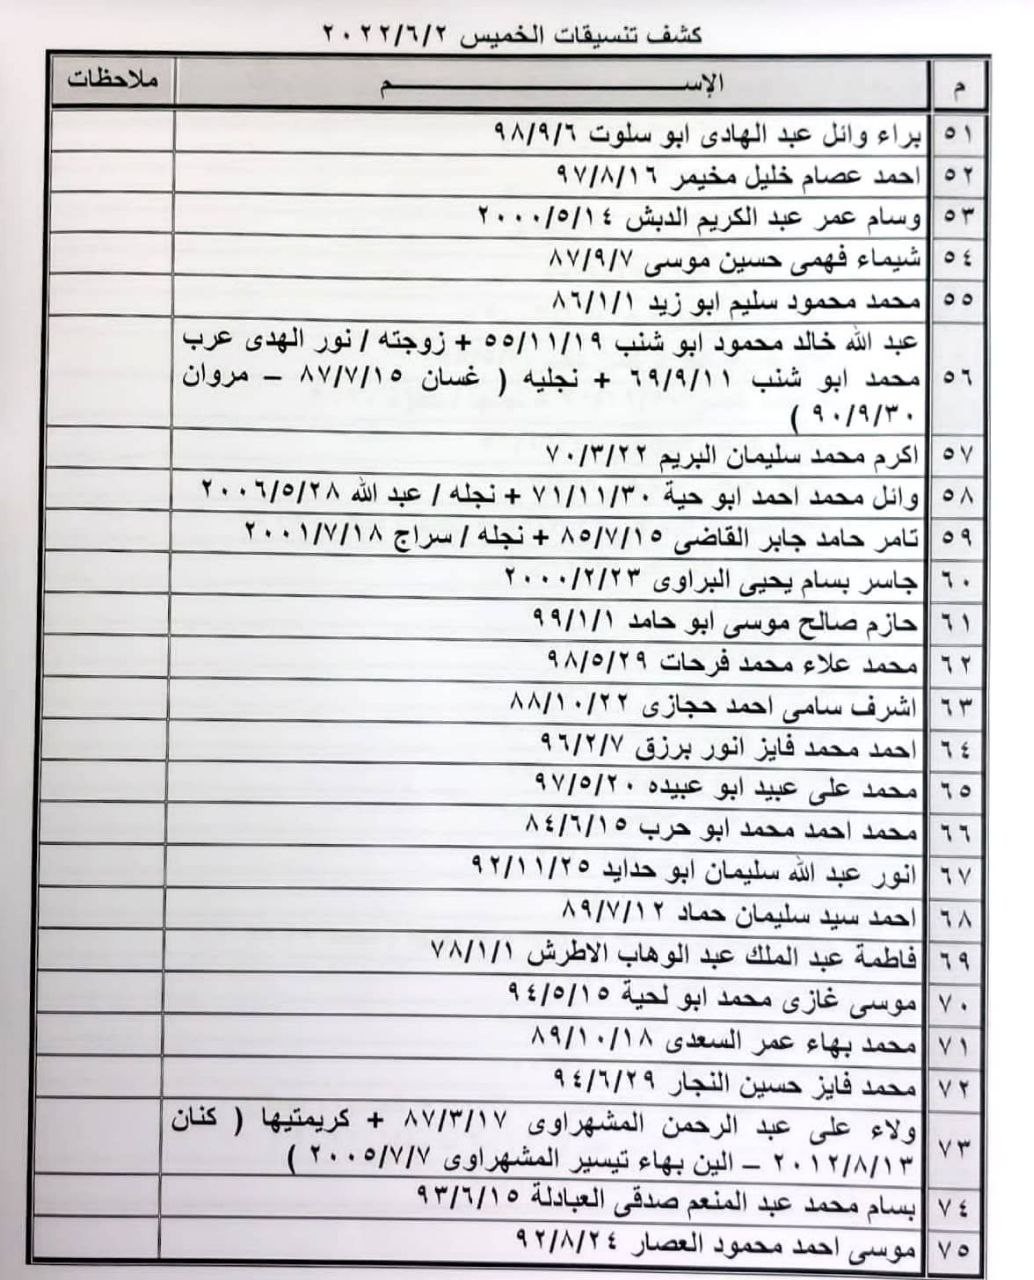 بالأسماء: داخلية غزة تنشر "كشف تنسيقات مصرية" للسفر عبر معبر رفح الخميس 2 يونيو 2022